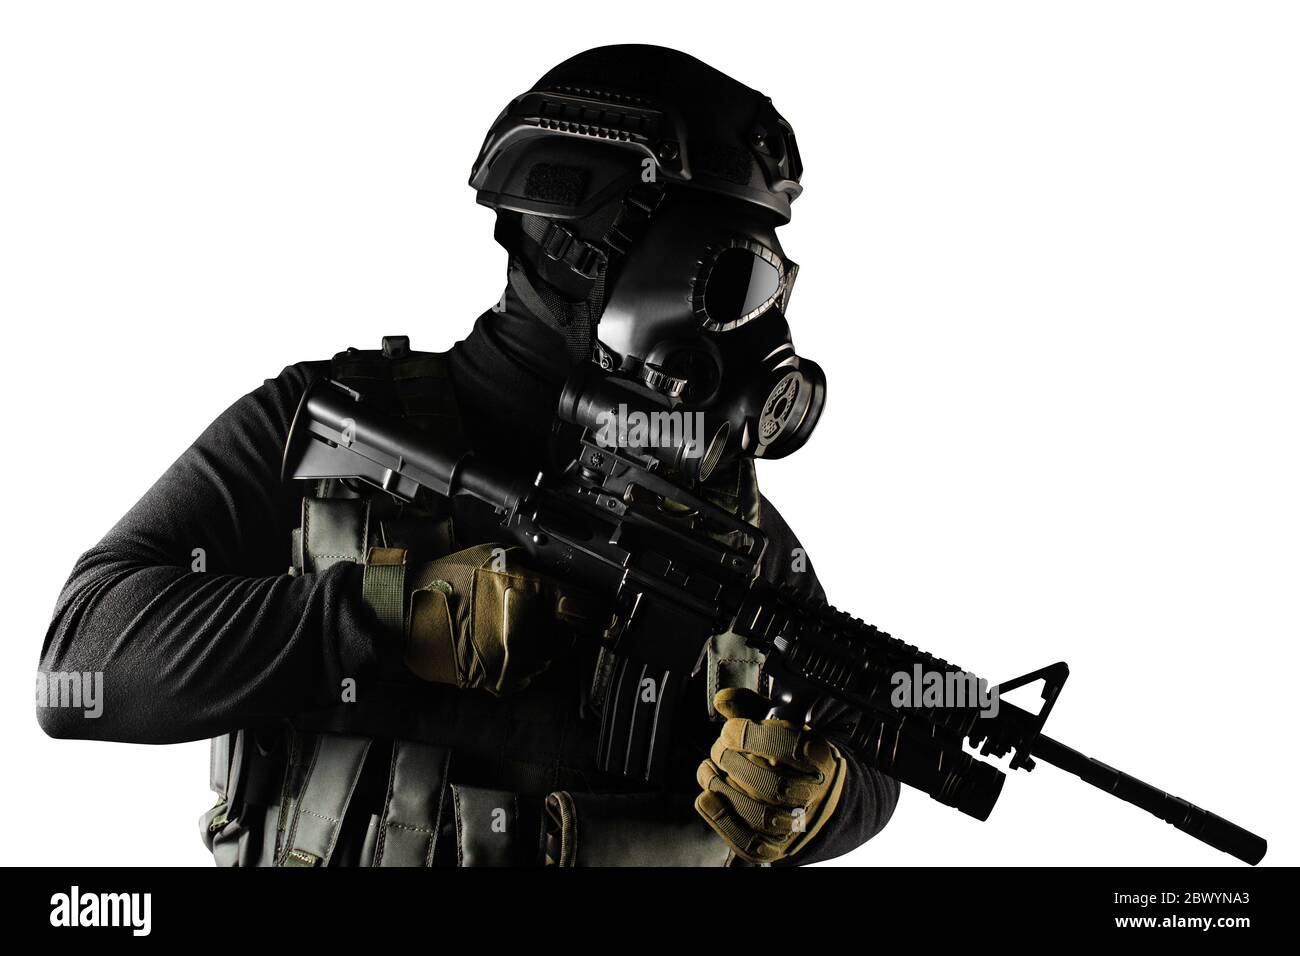 Foto eines voll ausgestatteten Soldaten in schwarzer Rüstung taktische Weste, Gasmaske, automatische Gewehr, Handschuhe und Helm stehen isoliert auf weißem Hintergrund. Stockfoto